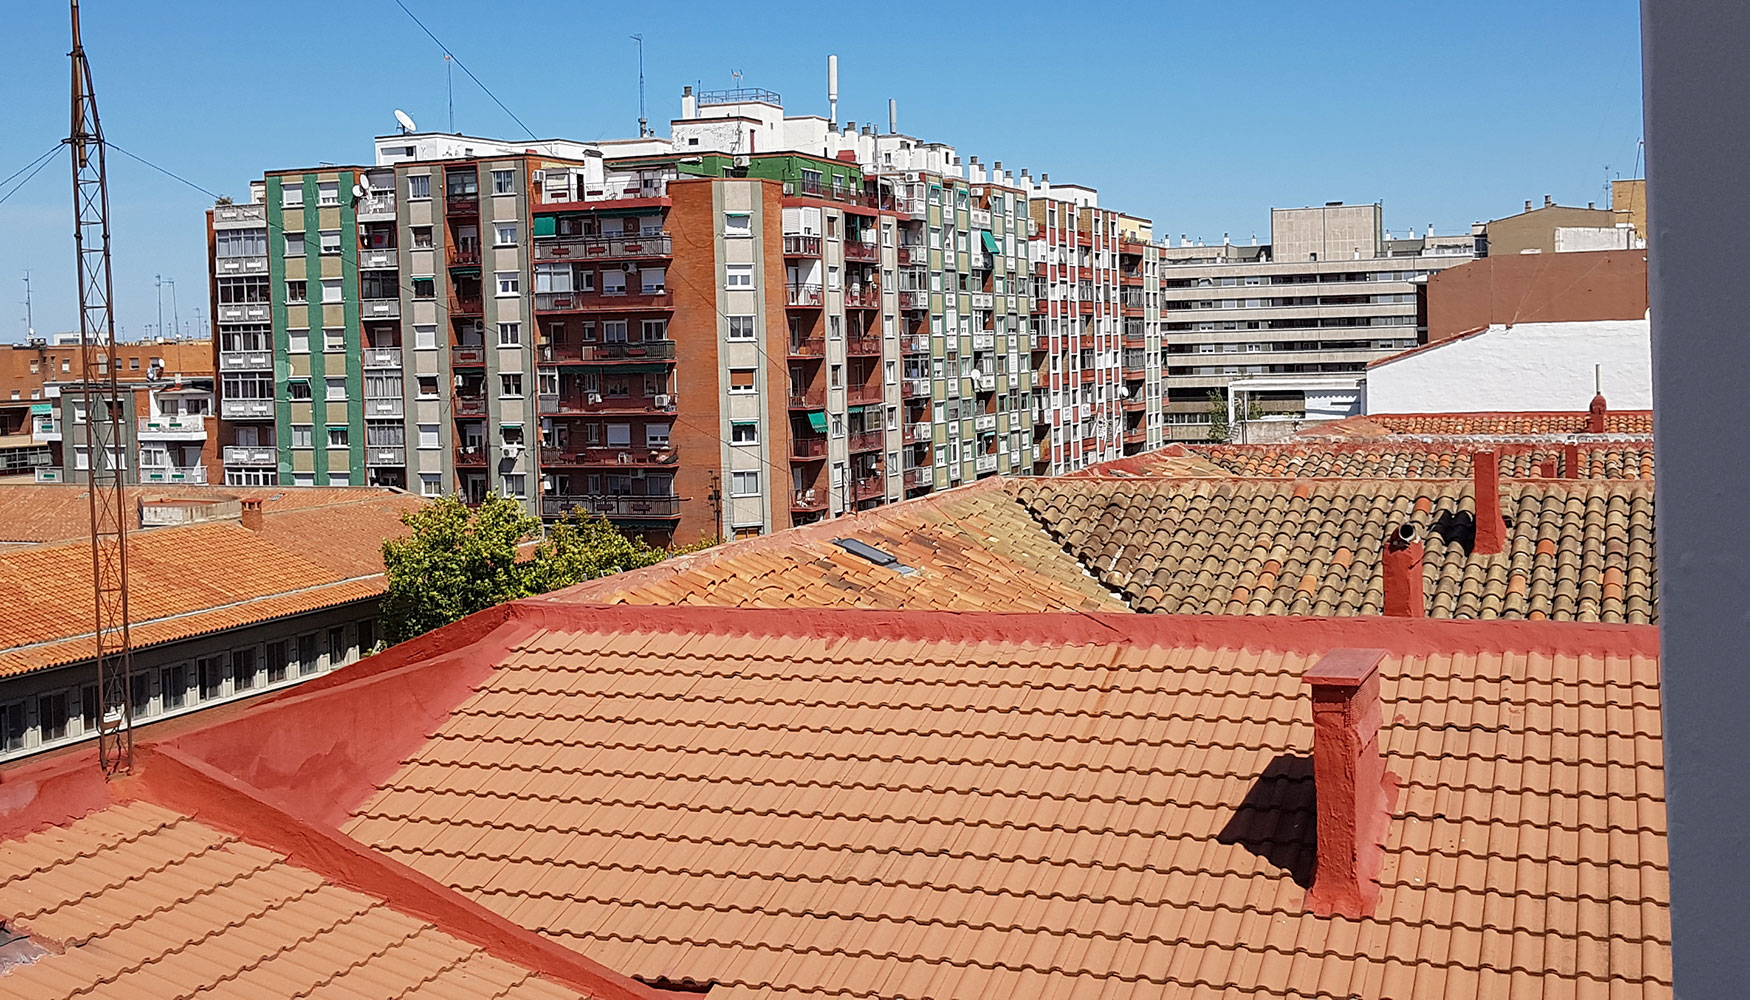 Destaca especialmente en las provincias de Huesca y Teruel el mayor nmero de solicitudes para viviendas unifamiliares...